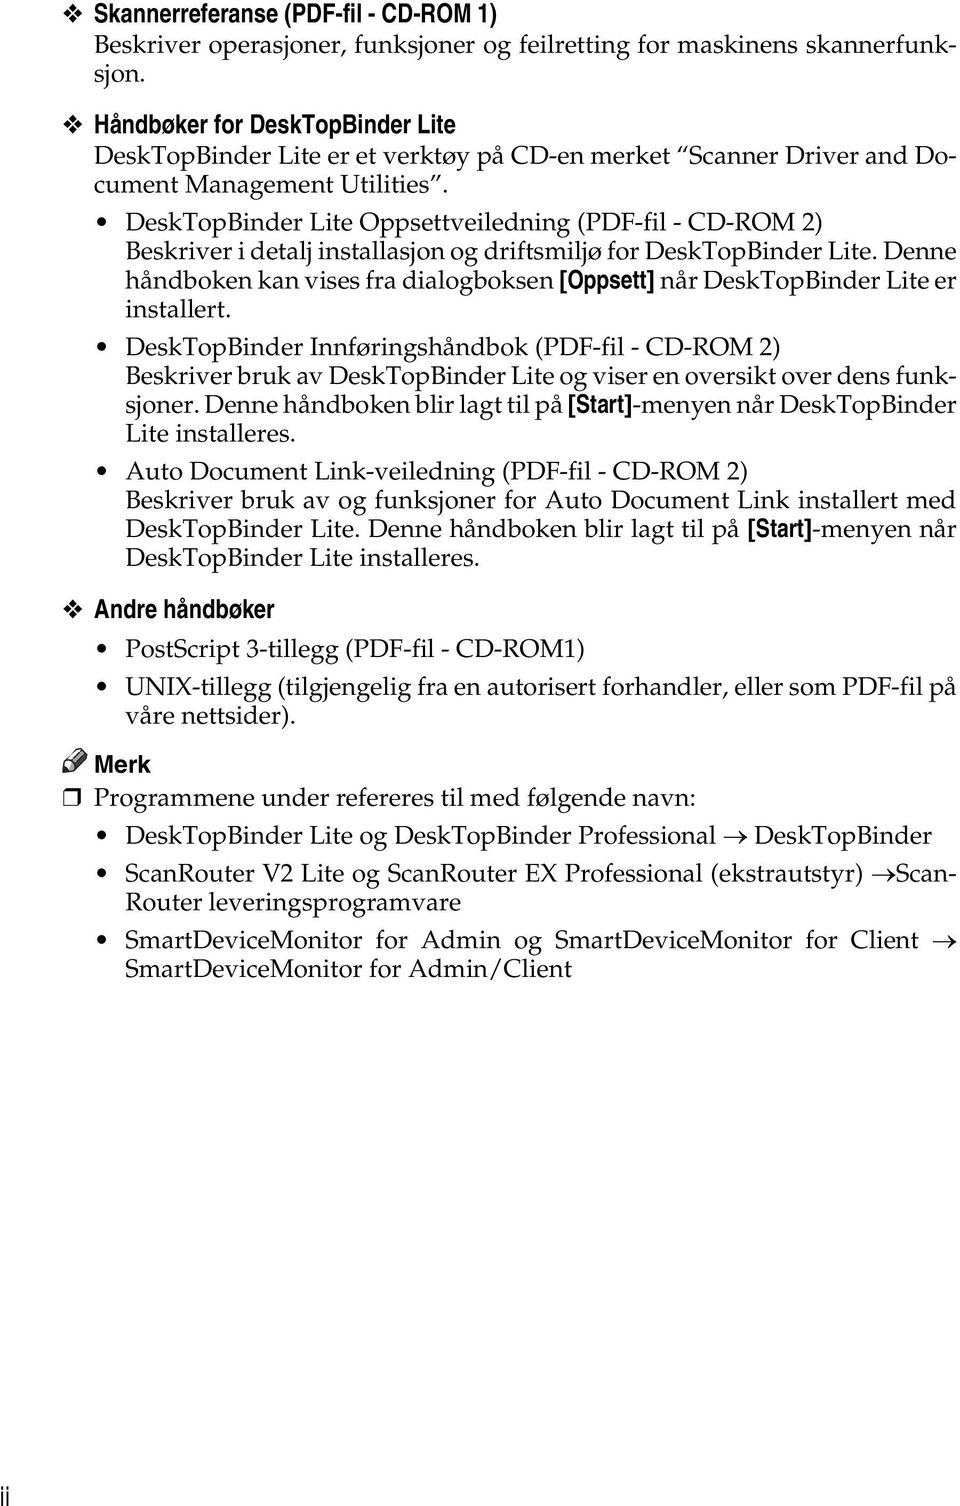 DeskTopBinder Lite Oppsettveiledning (PDF-fil - CD-ROM 2) Beskriver i detalj installasjon og driftsmiljø for DeskTopBinder Lite.